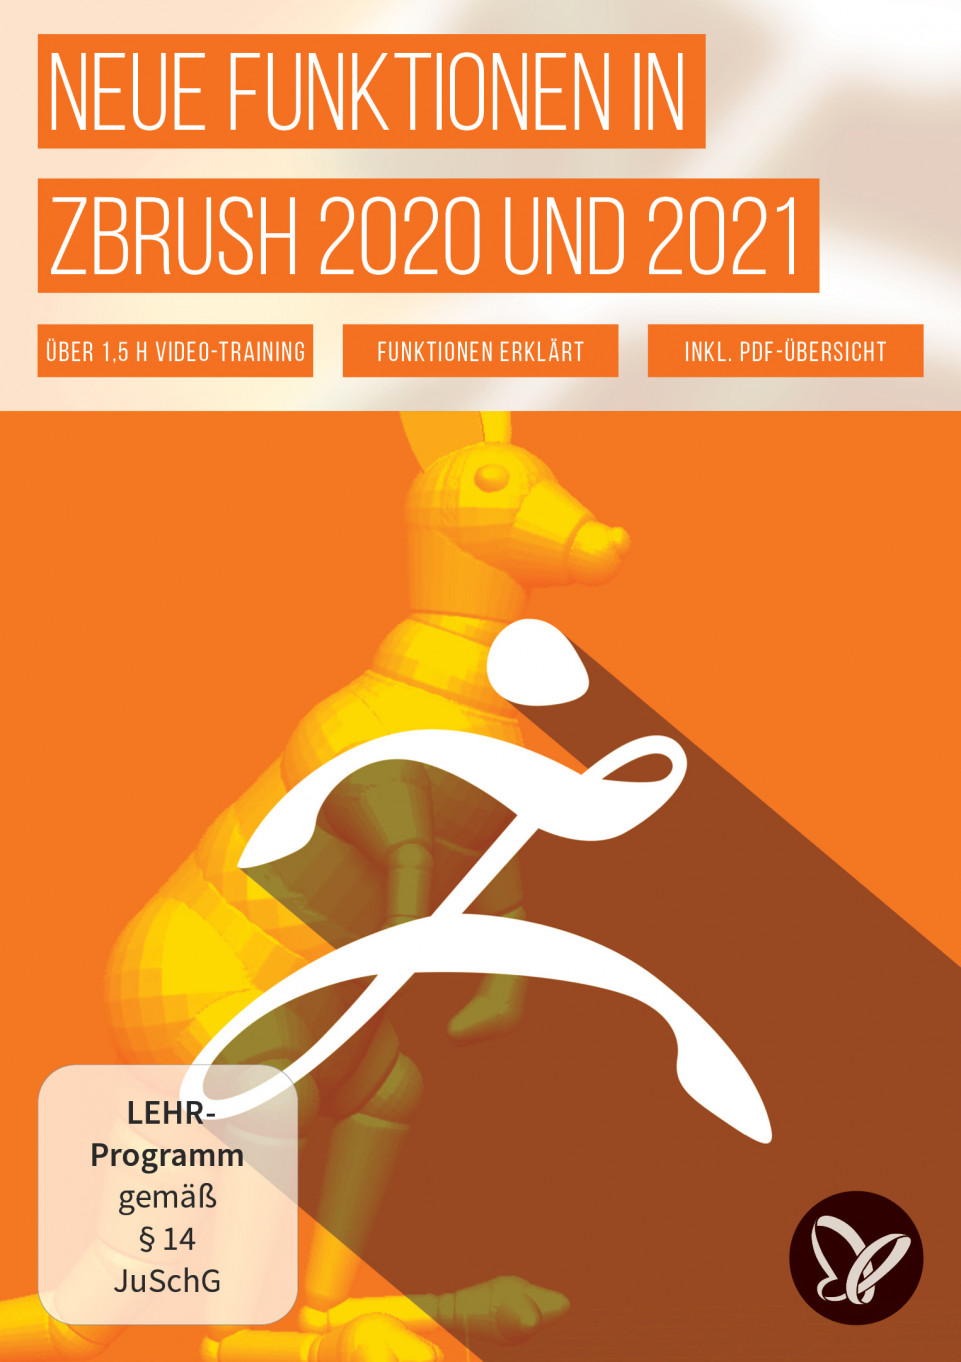 ZBrush 2020 und 2021: Video-Training zu den Updates